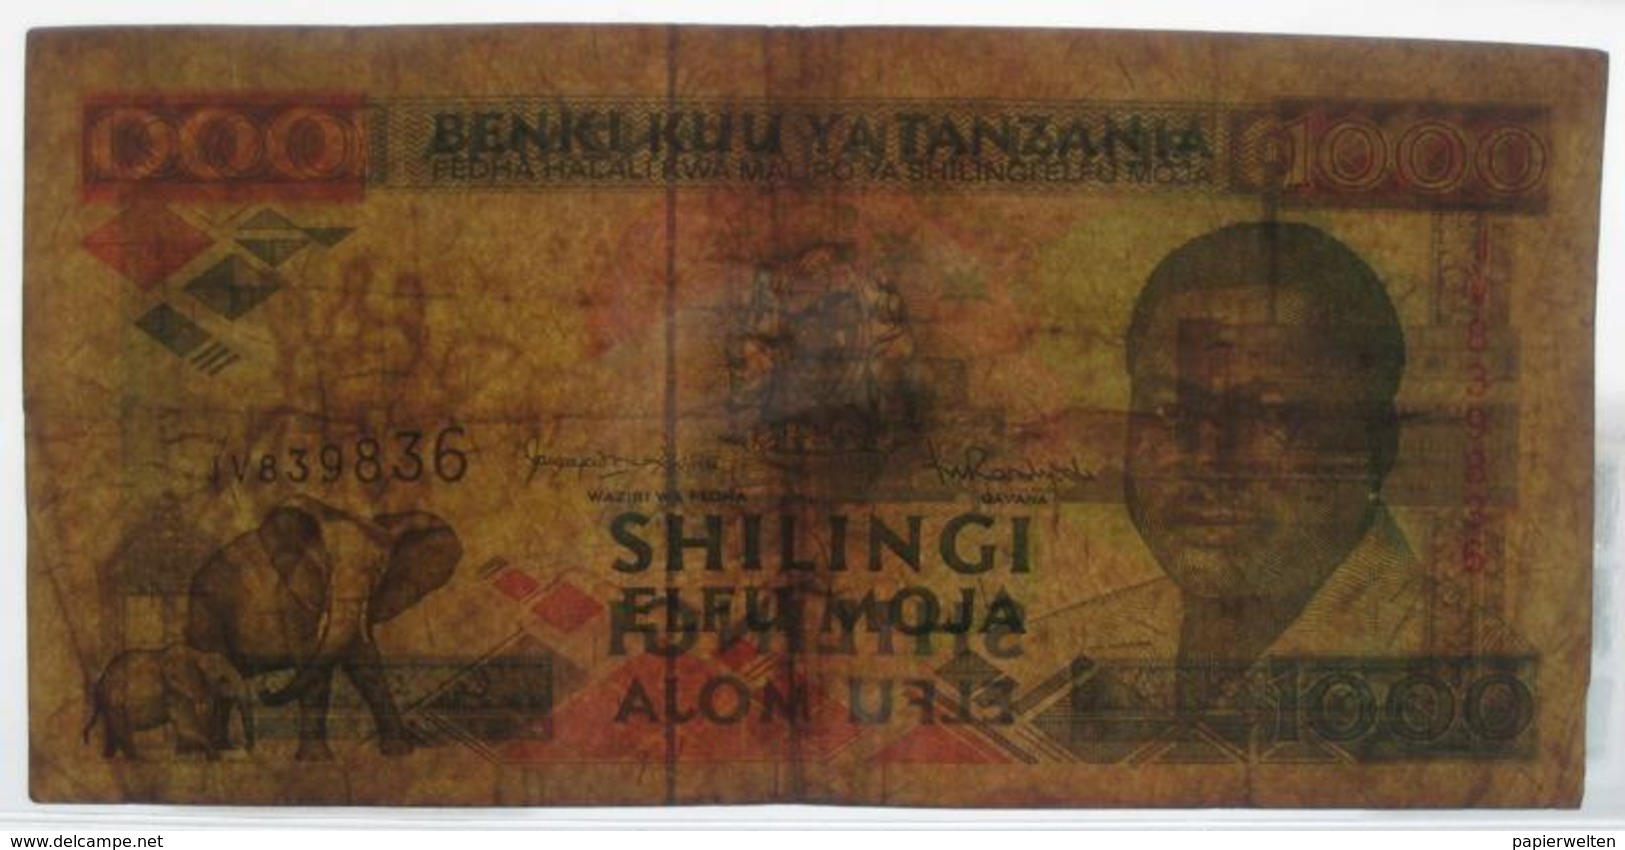 1000 / Elfu Moja Shilingi ND (WPM 27c) - Tanzanie